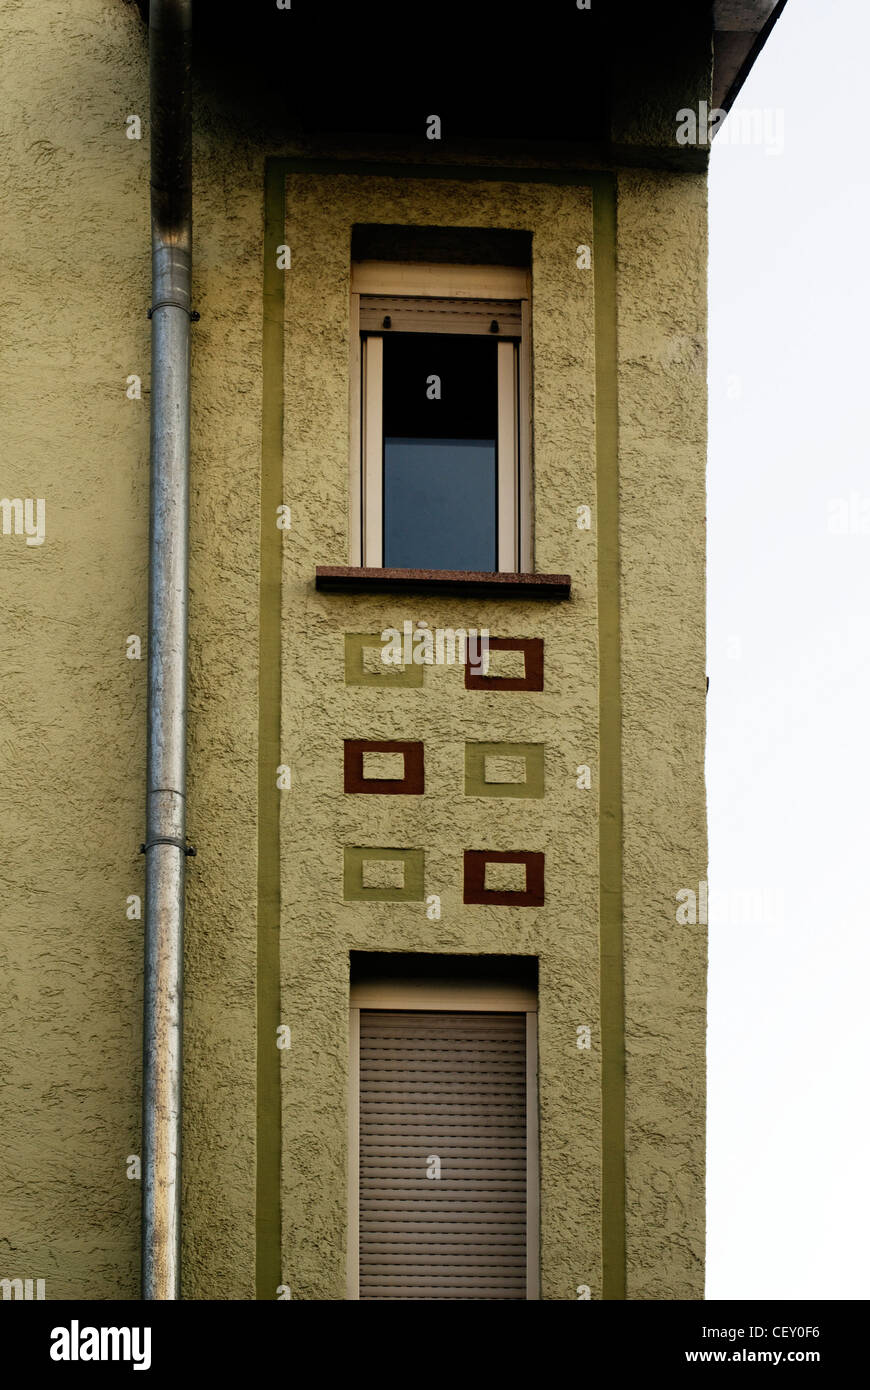 Fassade in Bensheim, Hesse, Germany Stock Photo